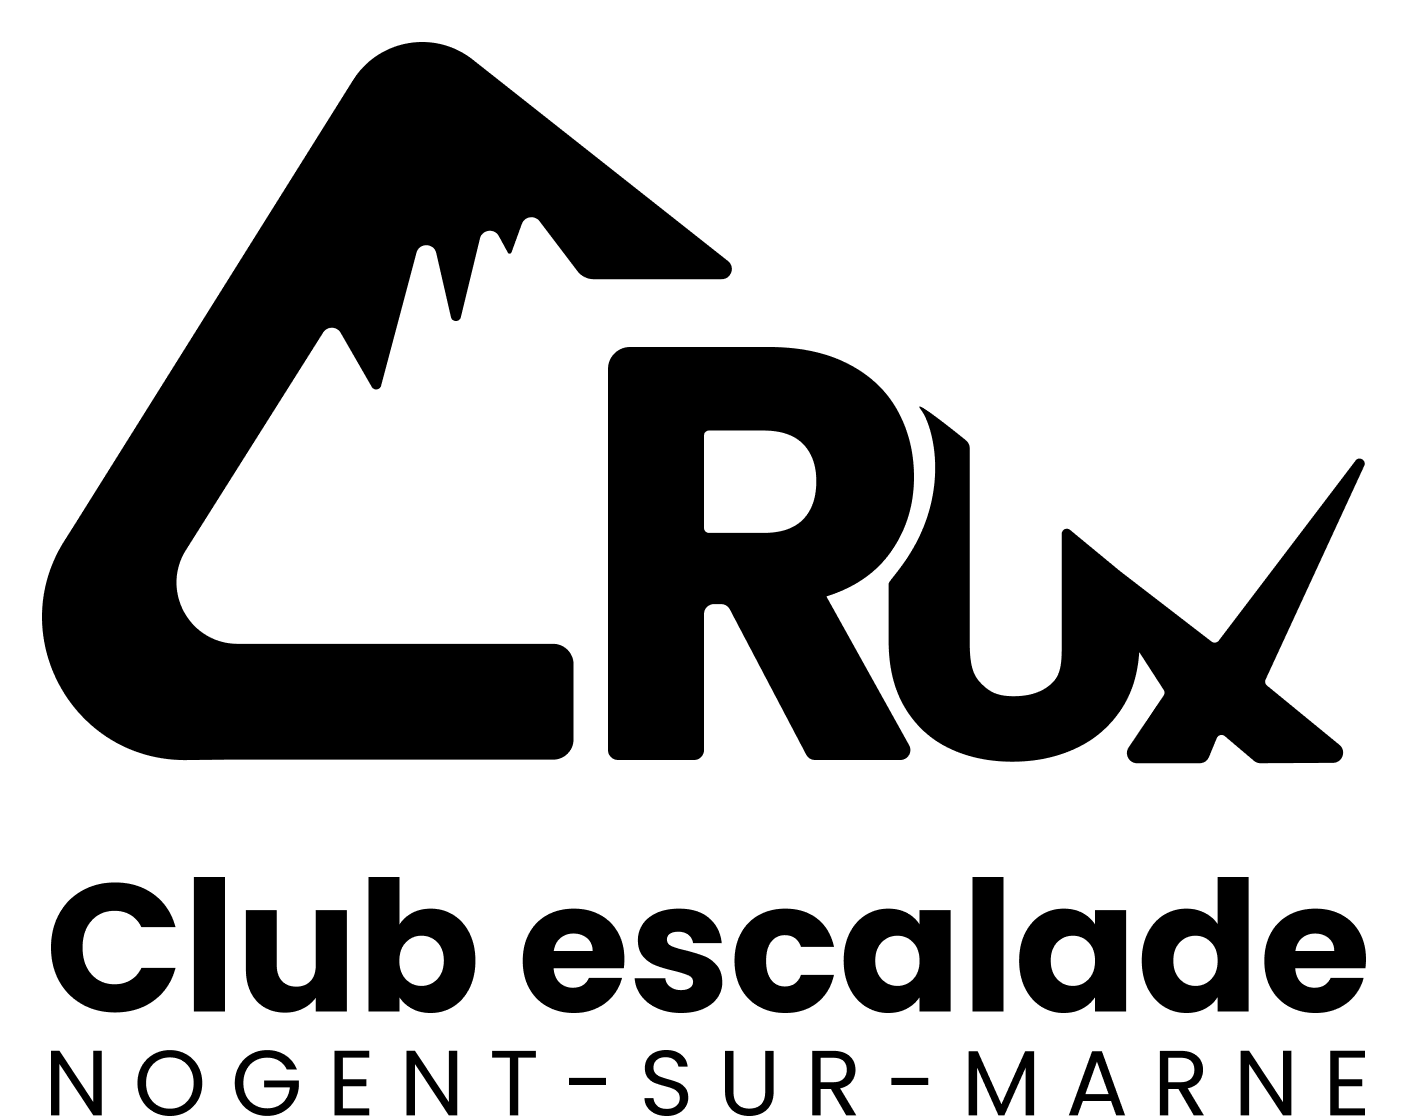 Crux Club